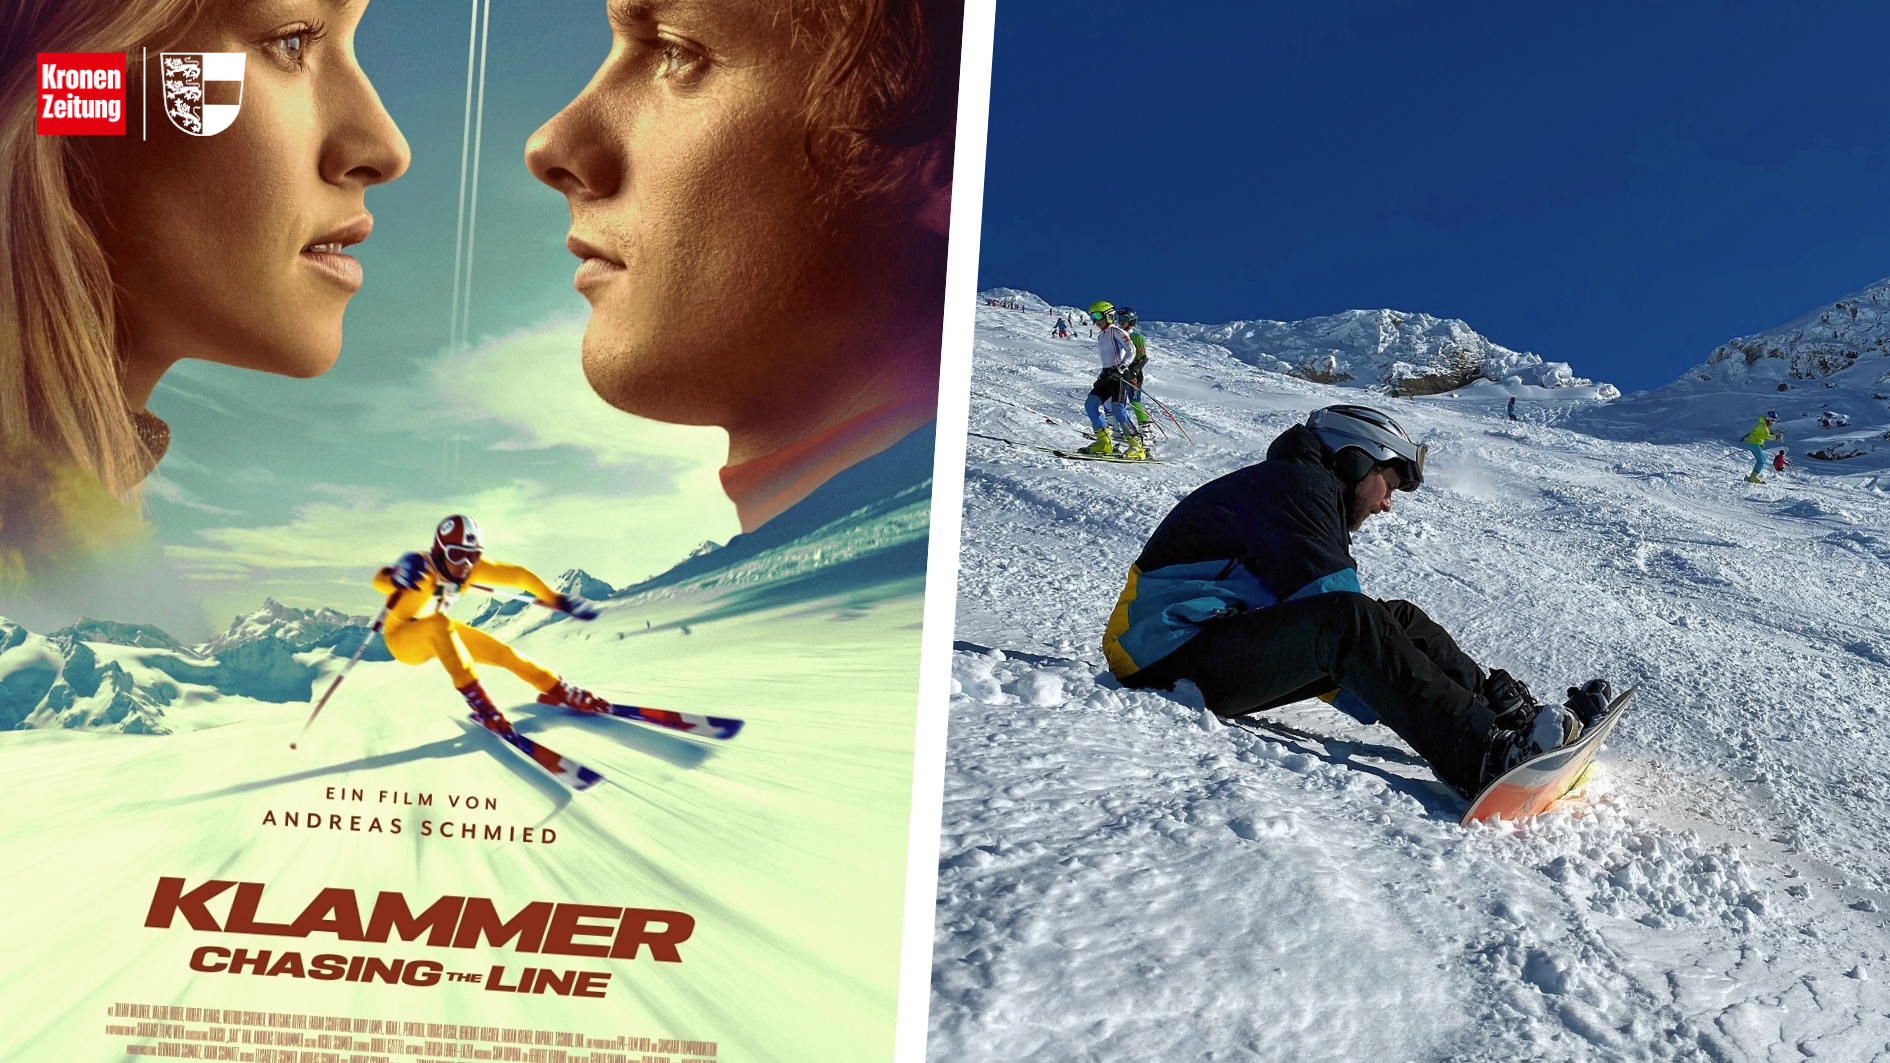 Der neue Franz Klammer Film soll Wintersportler nach Kärnten locken. (Bild: epo/ Samsara/ Tatry mountain resorts)